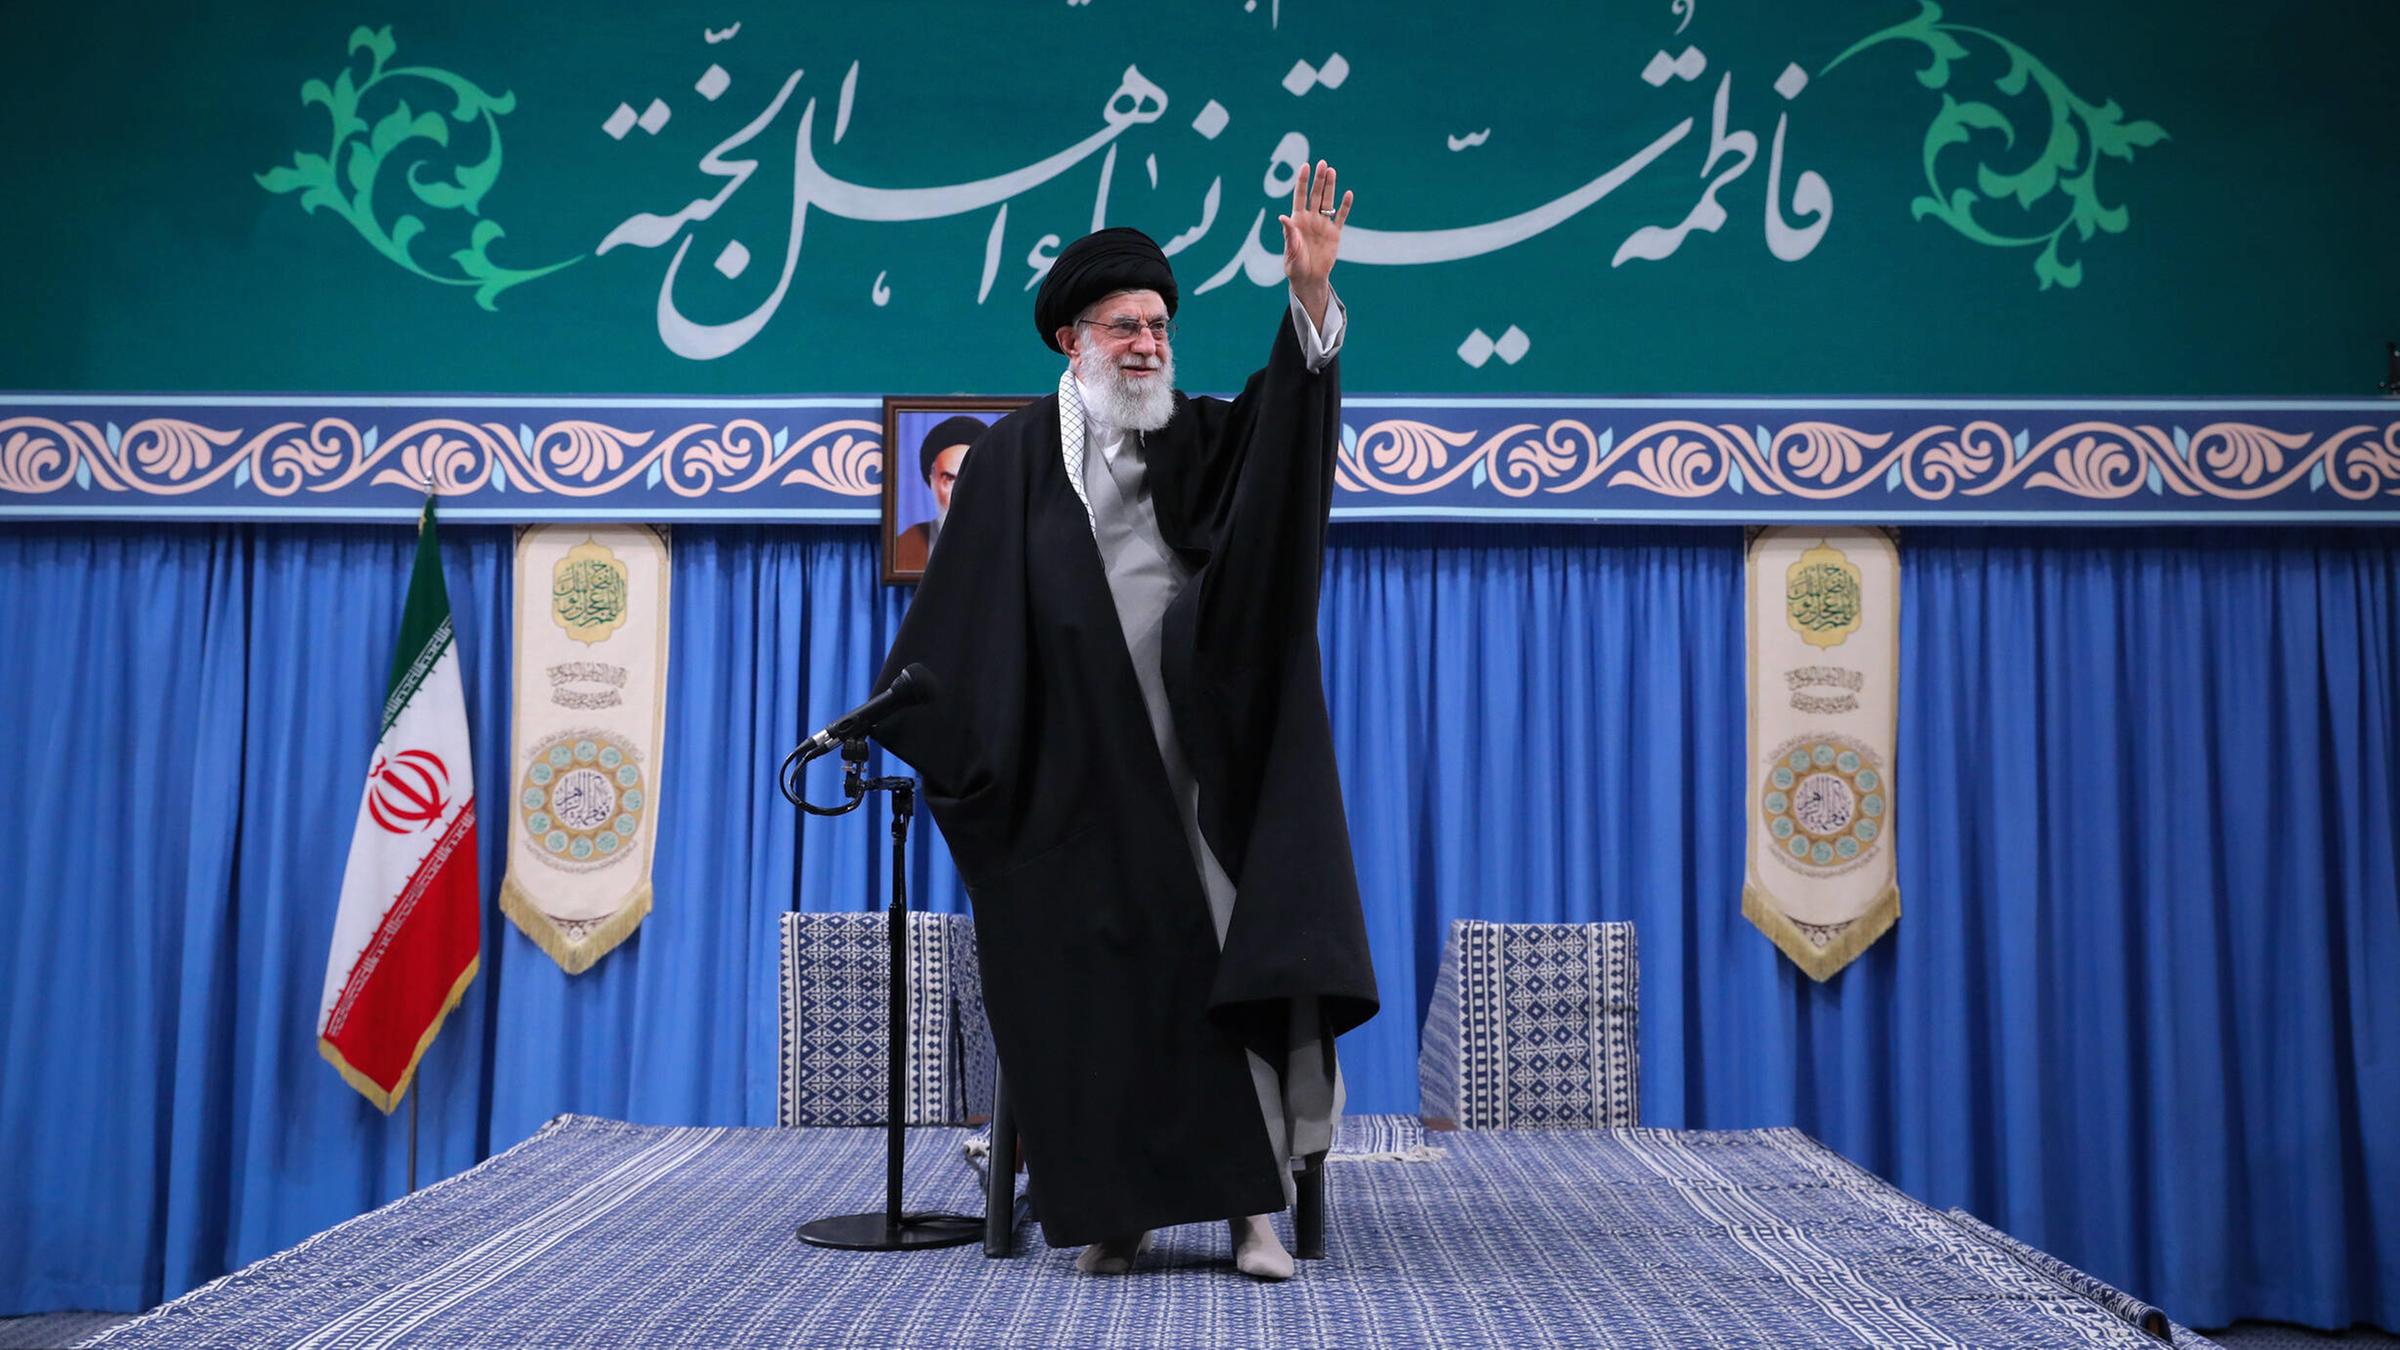 Ali Hosseini Khamenei steht auf einer Bühne, die mit Teppich ausgelegt ist. Er trägt eine schwarze Robe und winkt. Im Hintergrund steht die iranische Flagge.